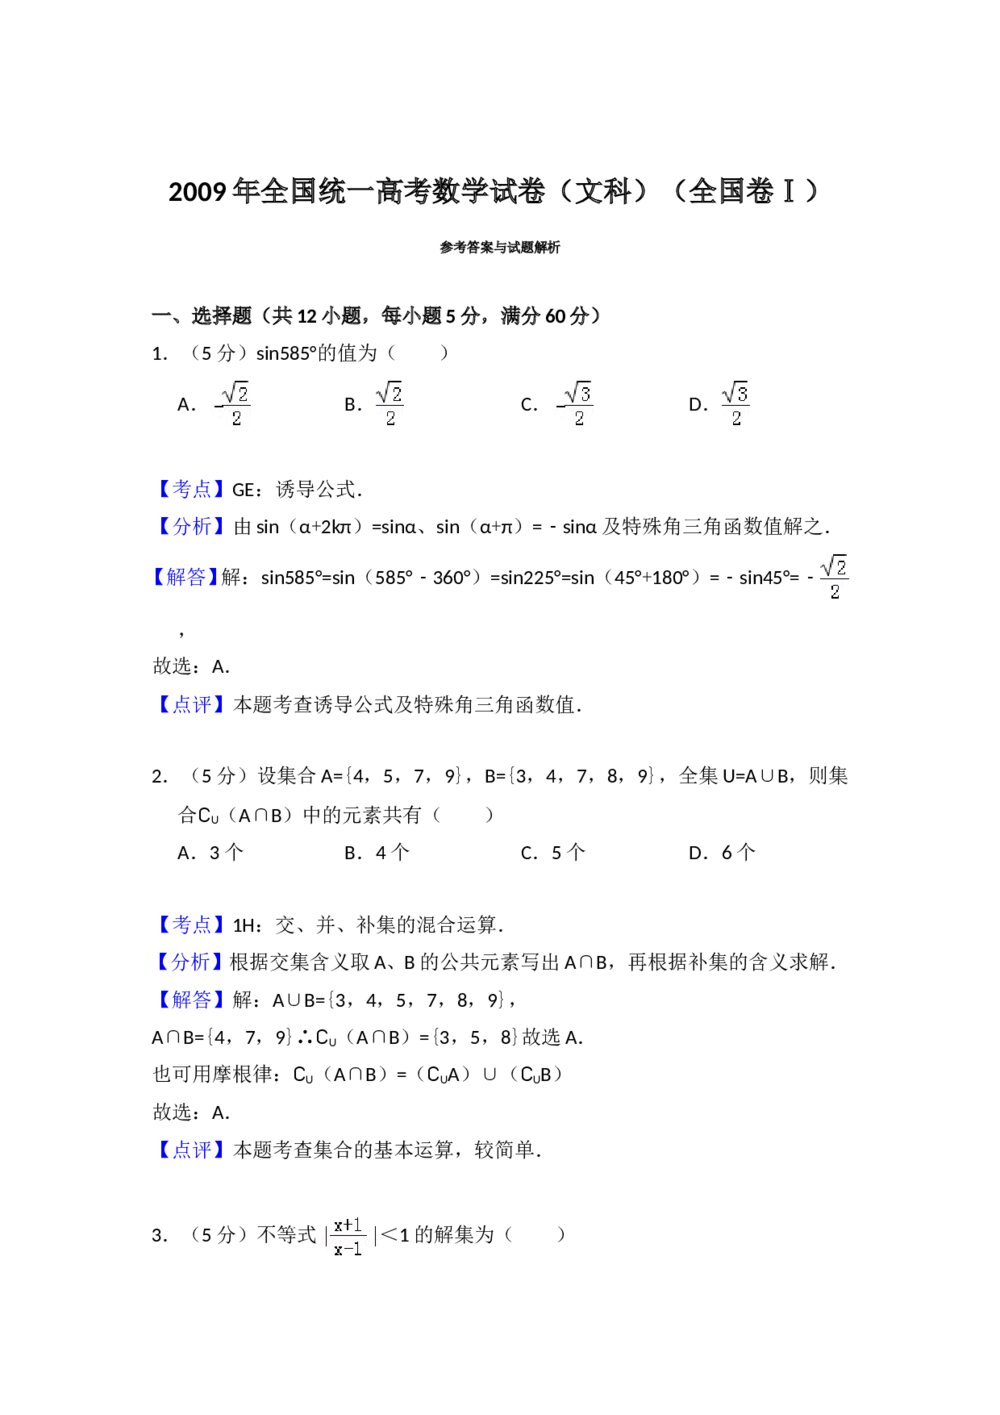 2009年全国统一高考数学试卷(文科)(全国卷ⅰ)+(答案解析)6